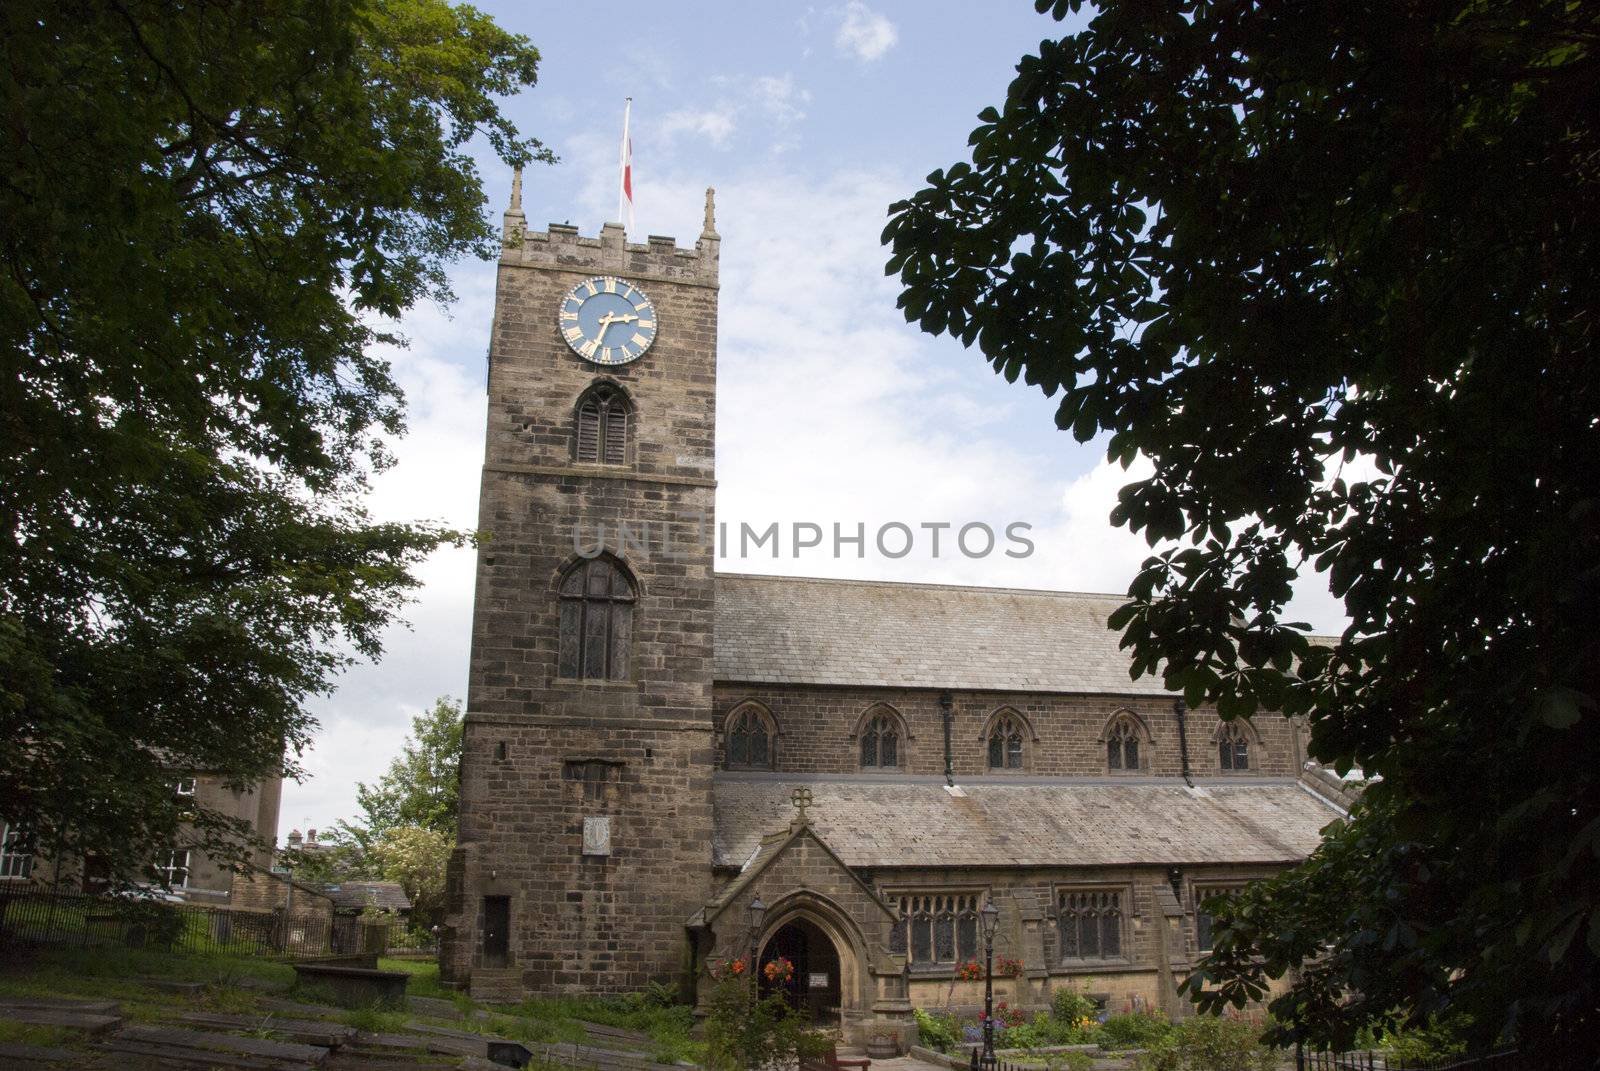 Haworth Church by d40xboy